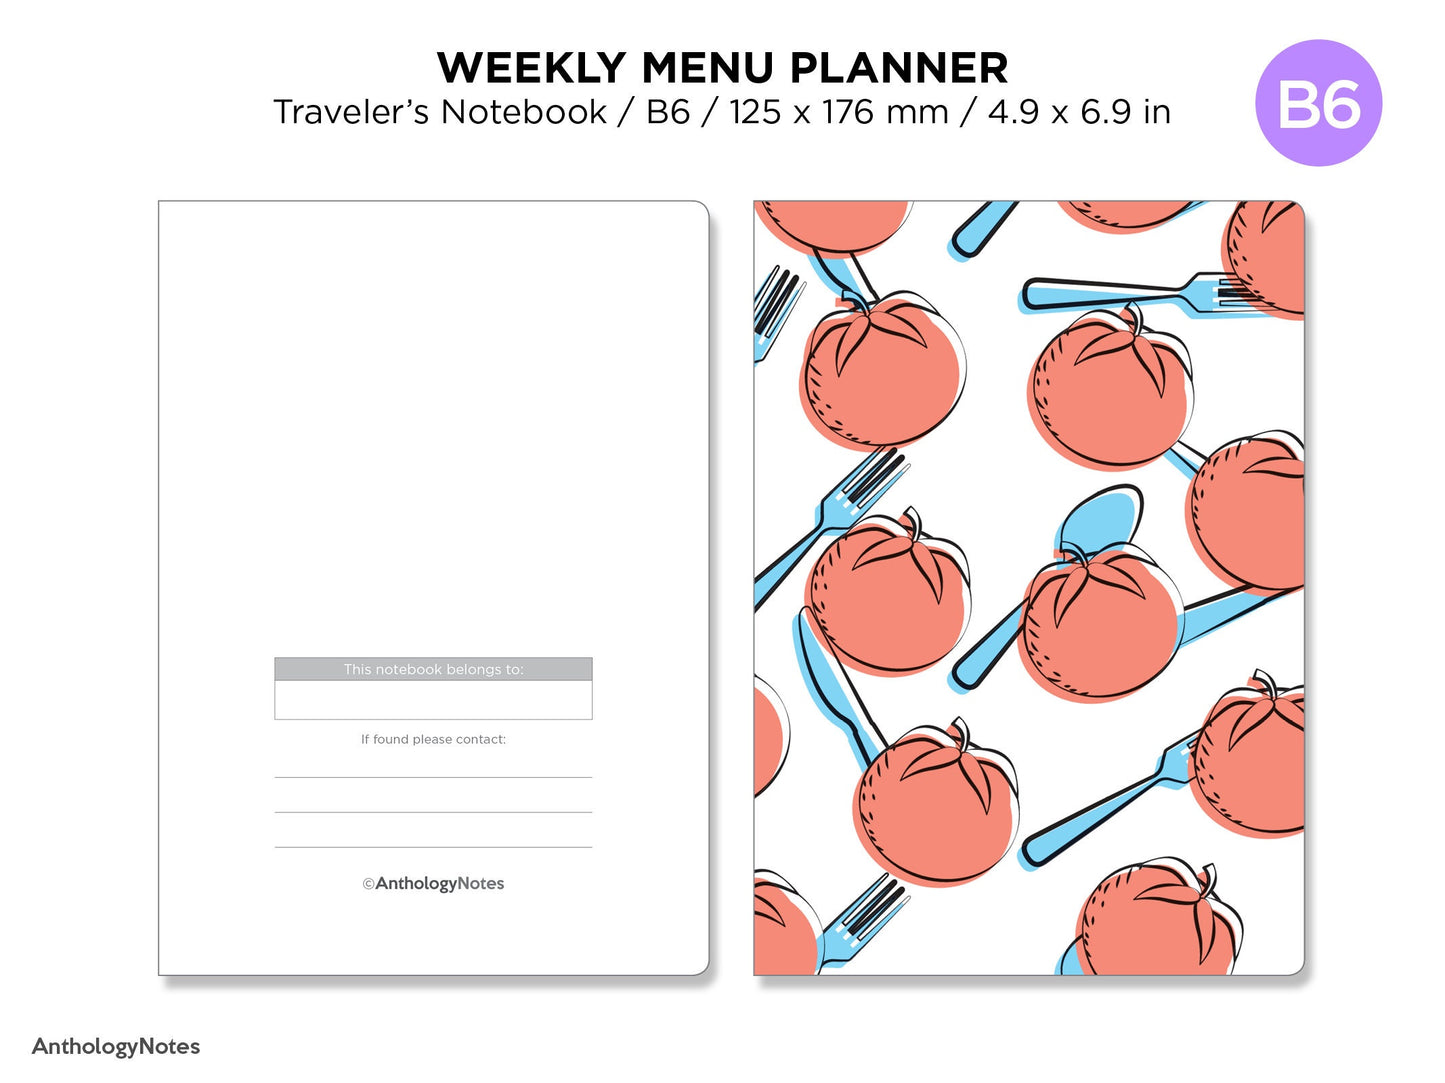 B6 TN Menu Planner Weekly Minimalist Printable Traveler's Notebook Insert GRID